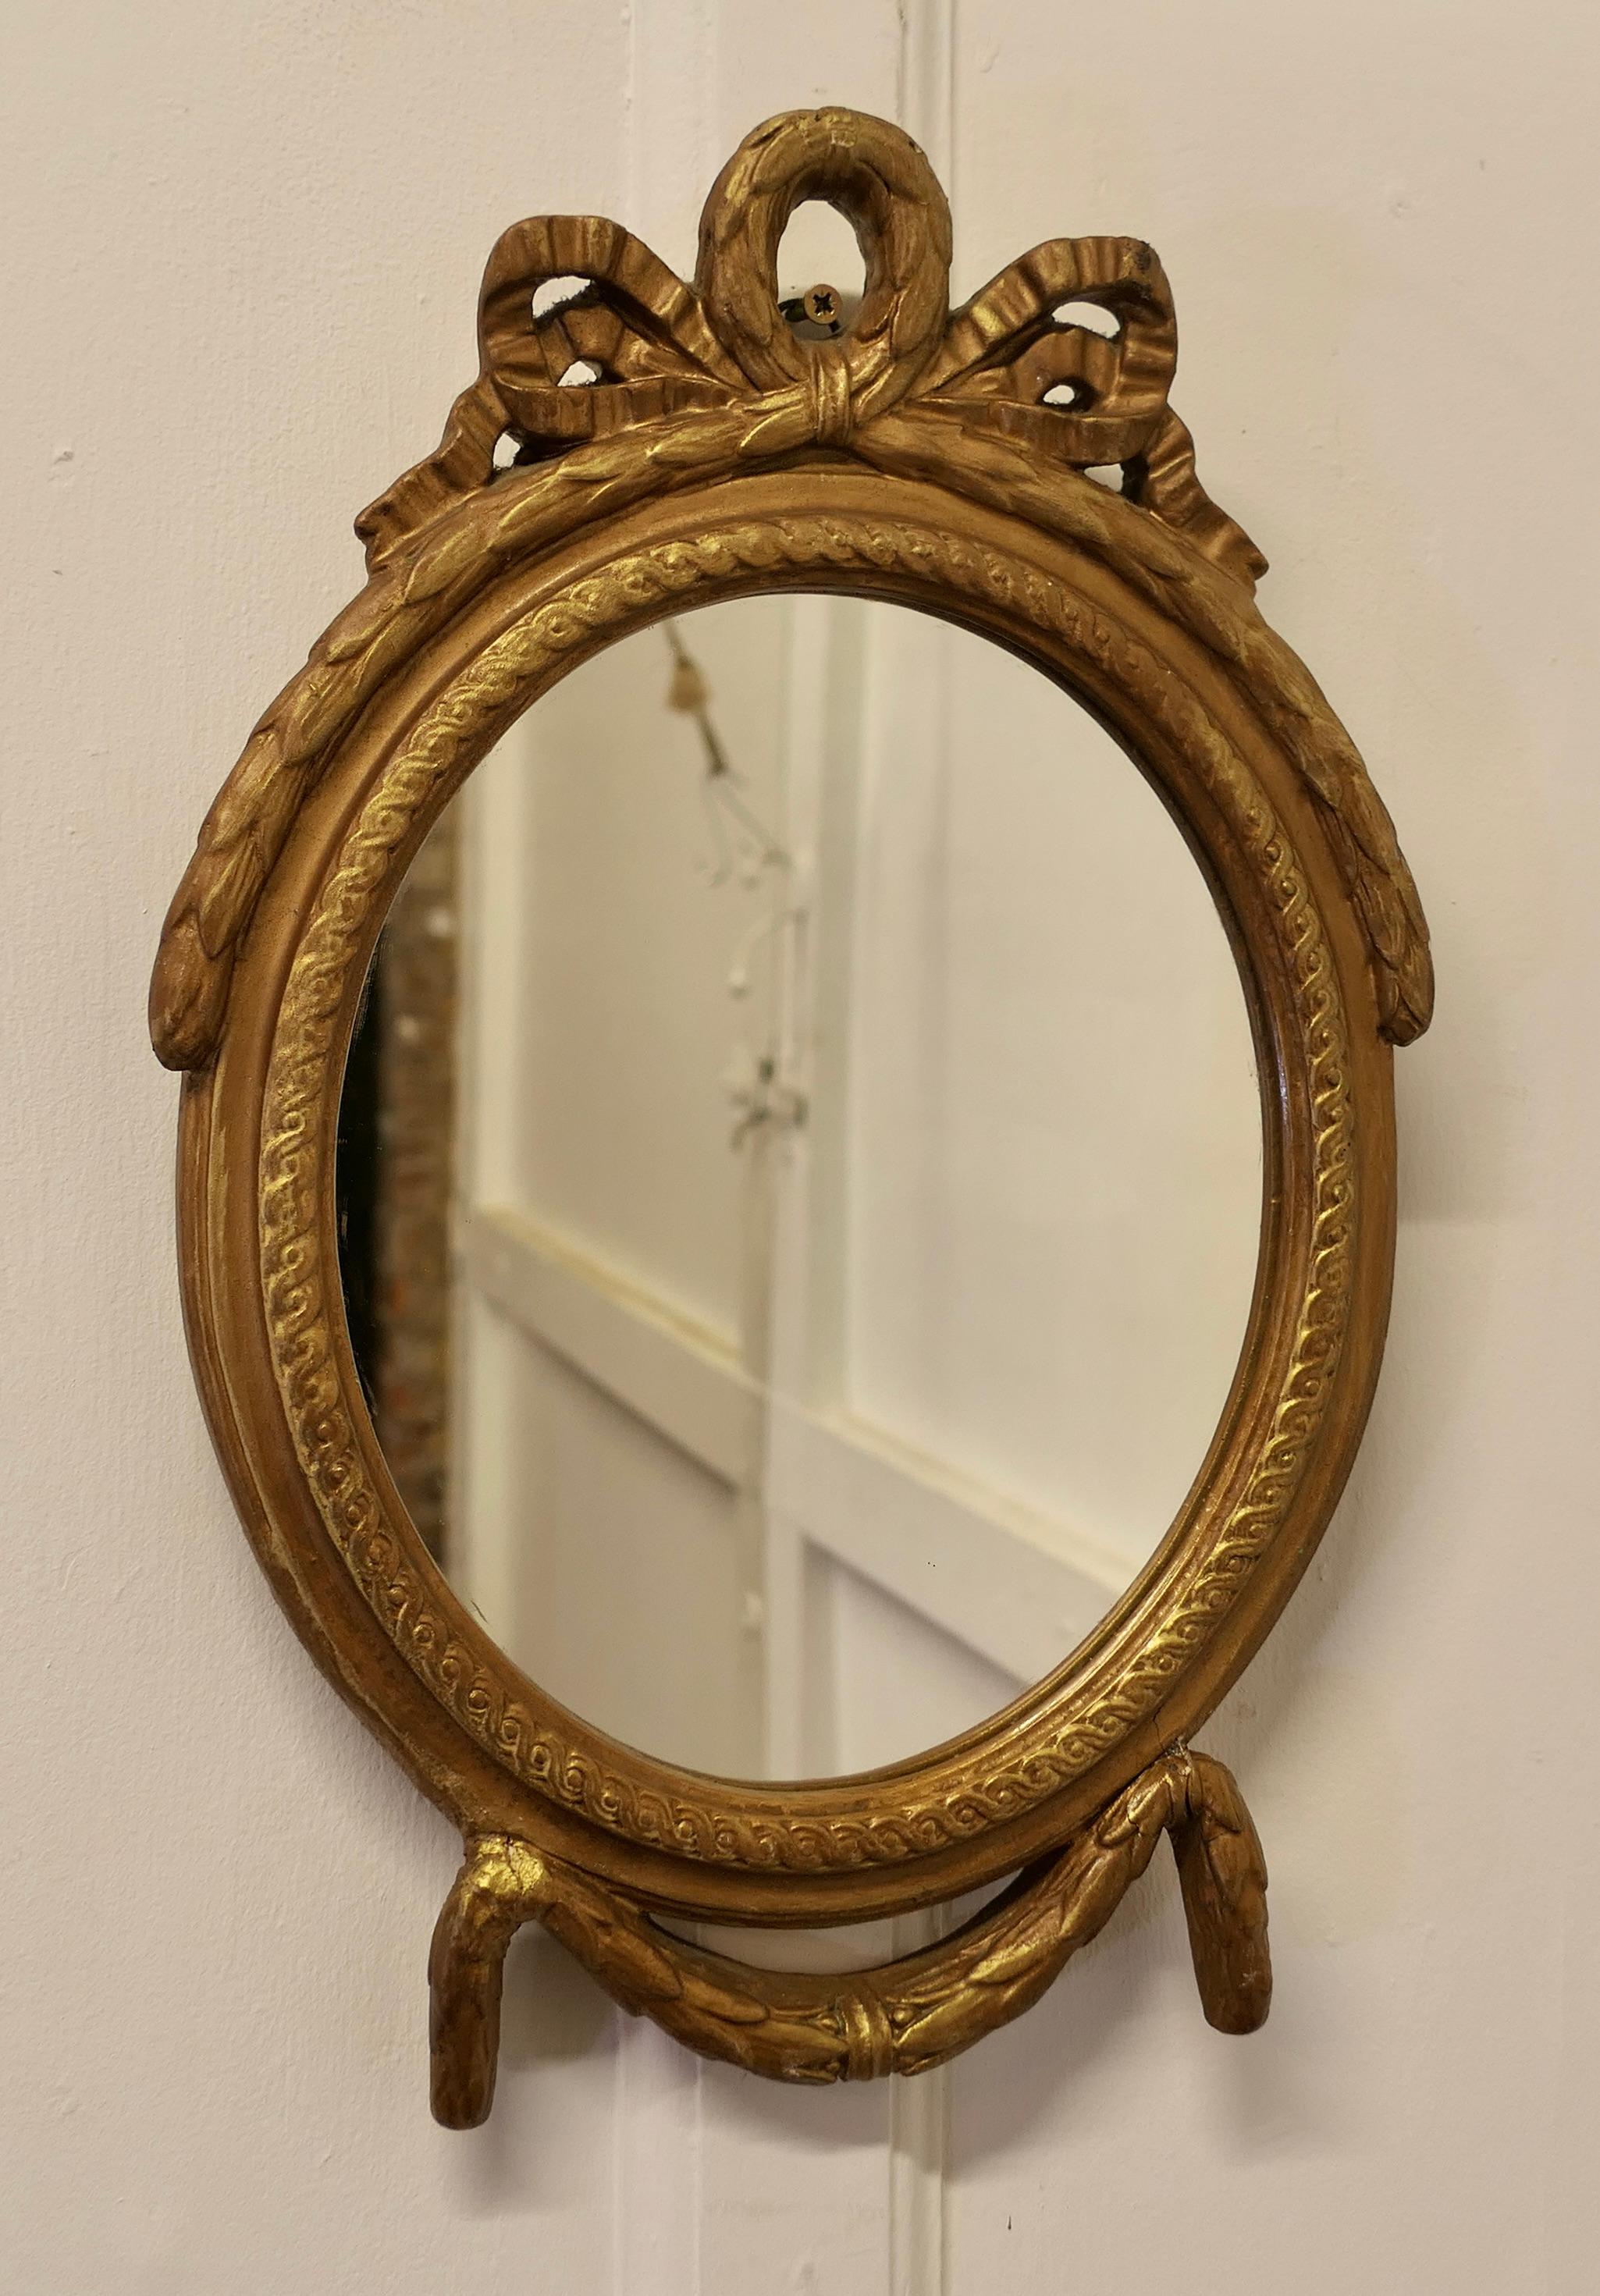 Mirror Decorative Gilt Oval

Ce miroir a un cadre ovale moulé de 1,5